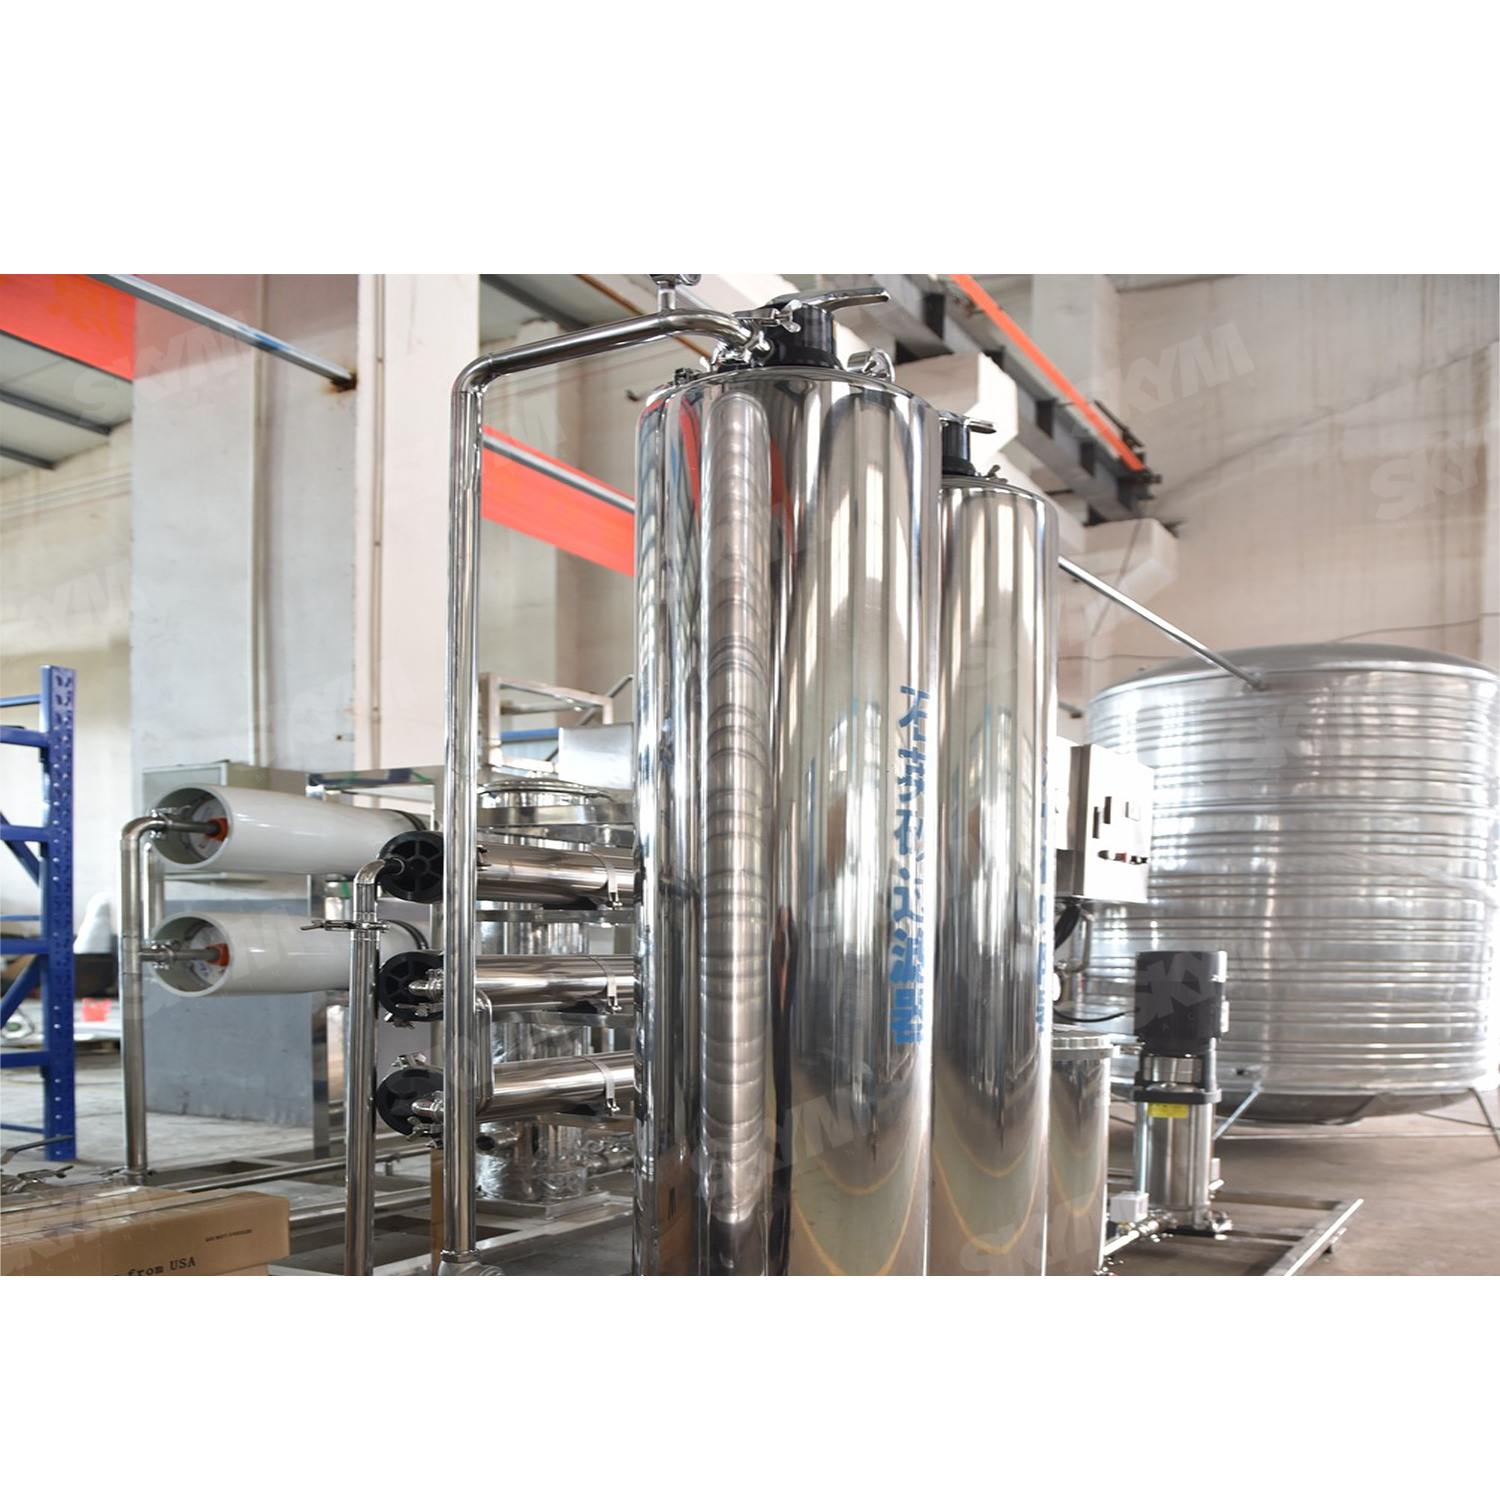 Équipement de traitement de l'eau en acier inoxydable avec système RO